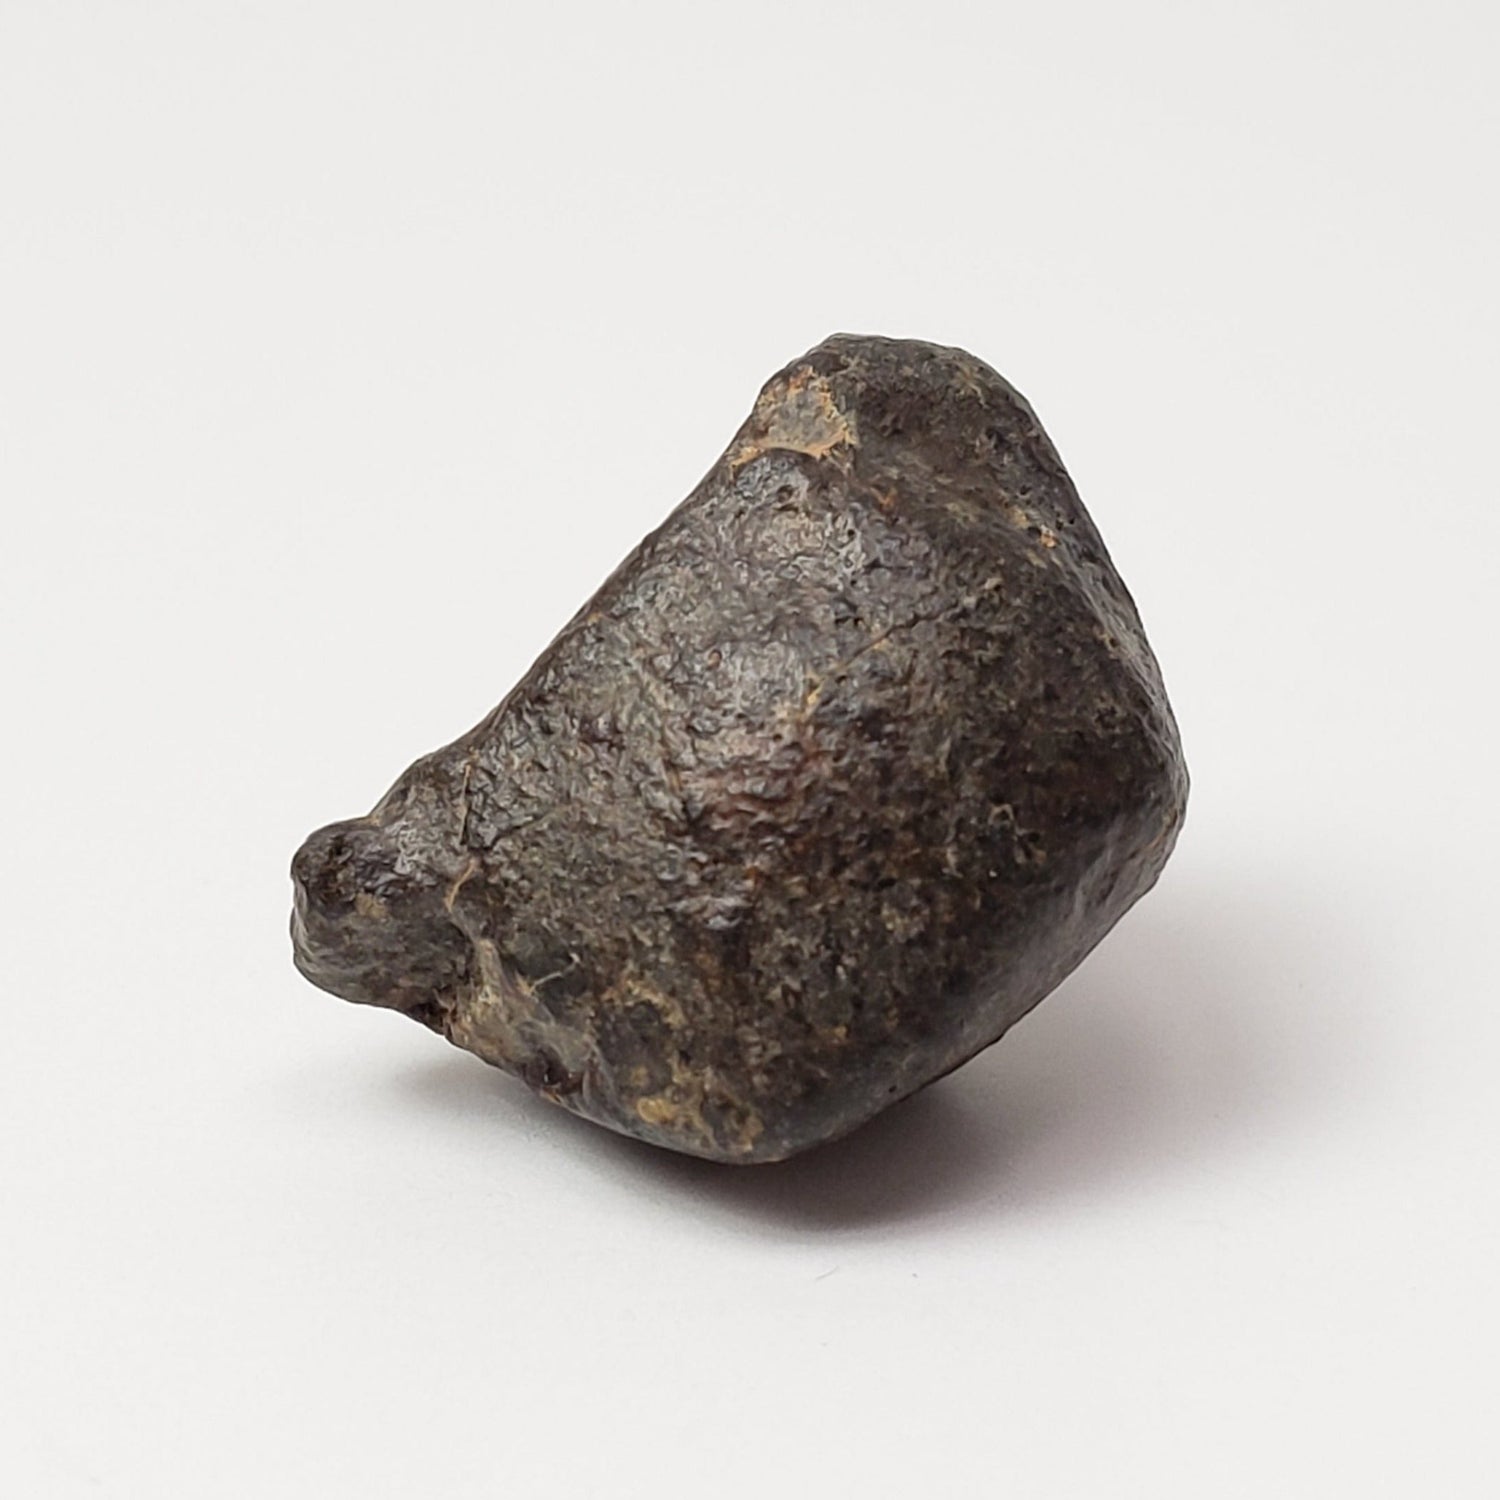 NWA 869 Meteorite | 4.85 Grams | Individual | L3-6 Chondrite | Crusted Specimen